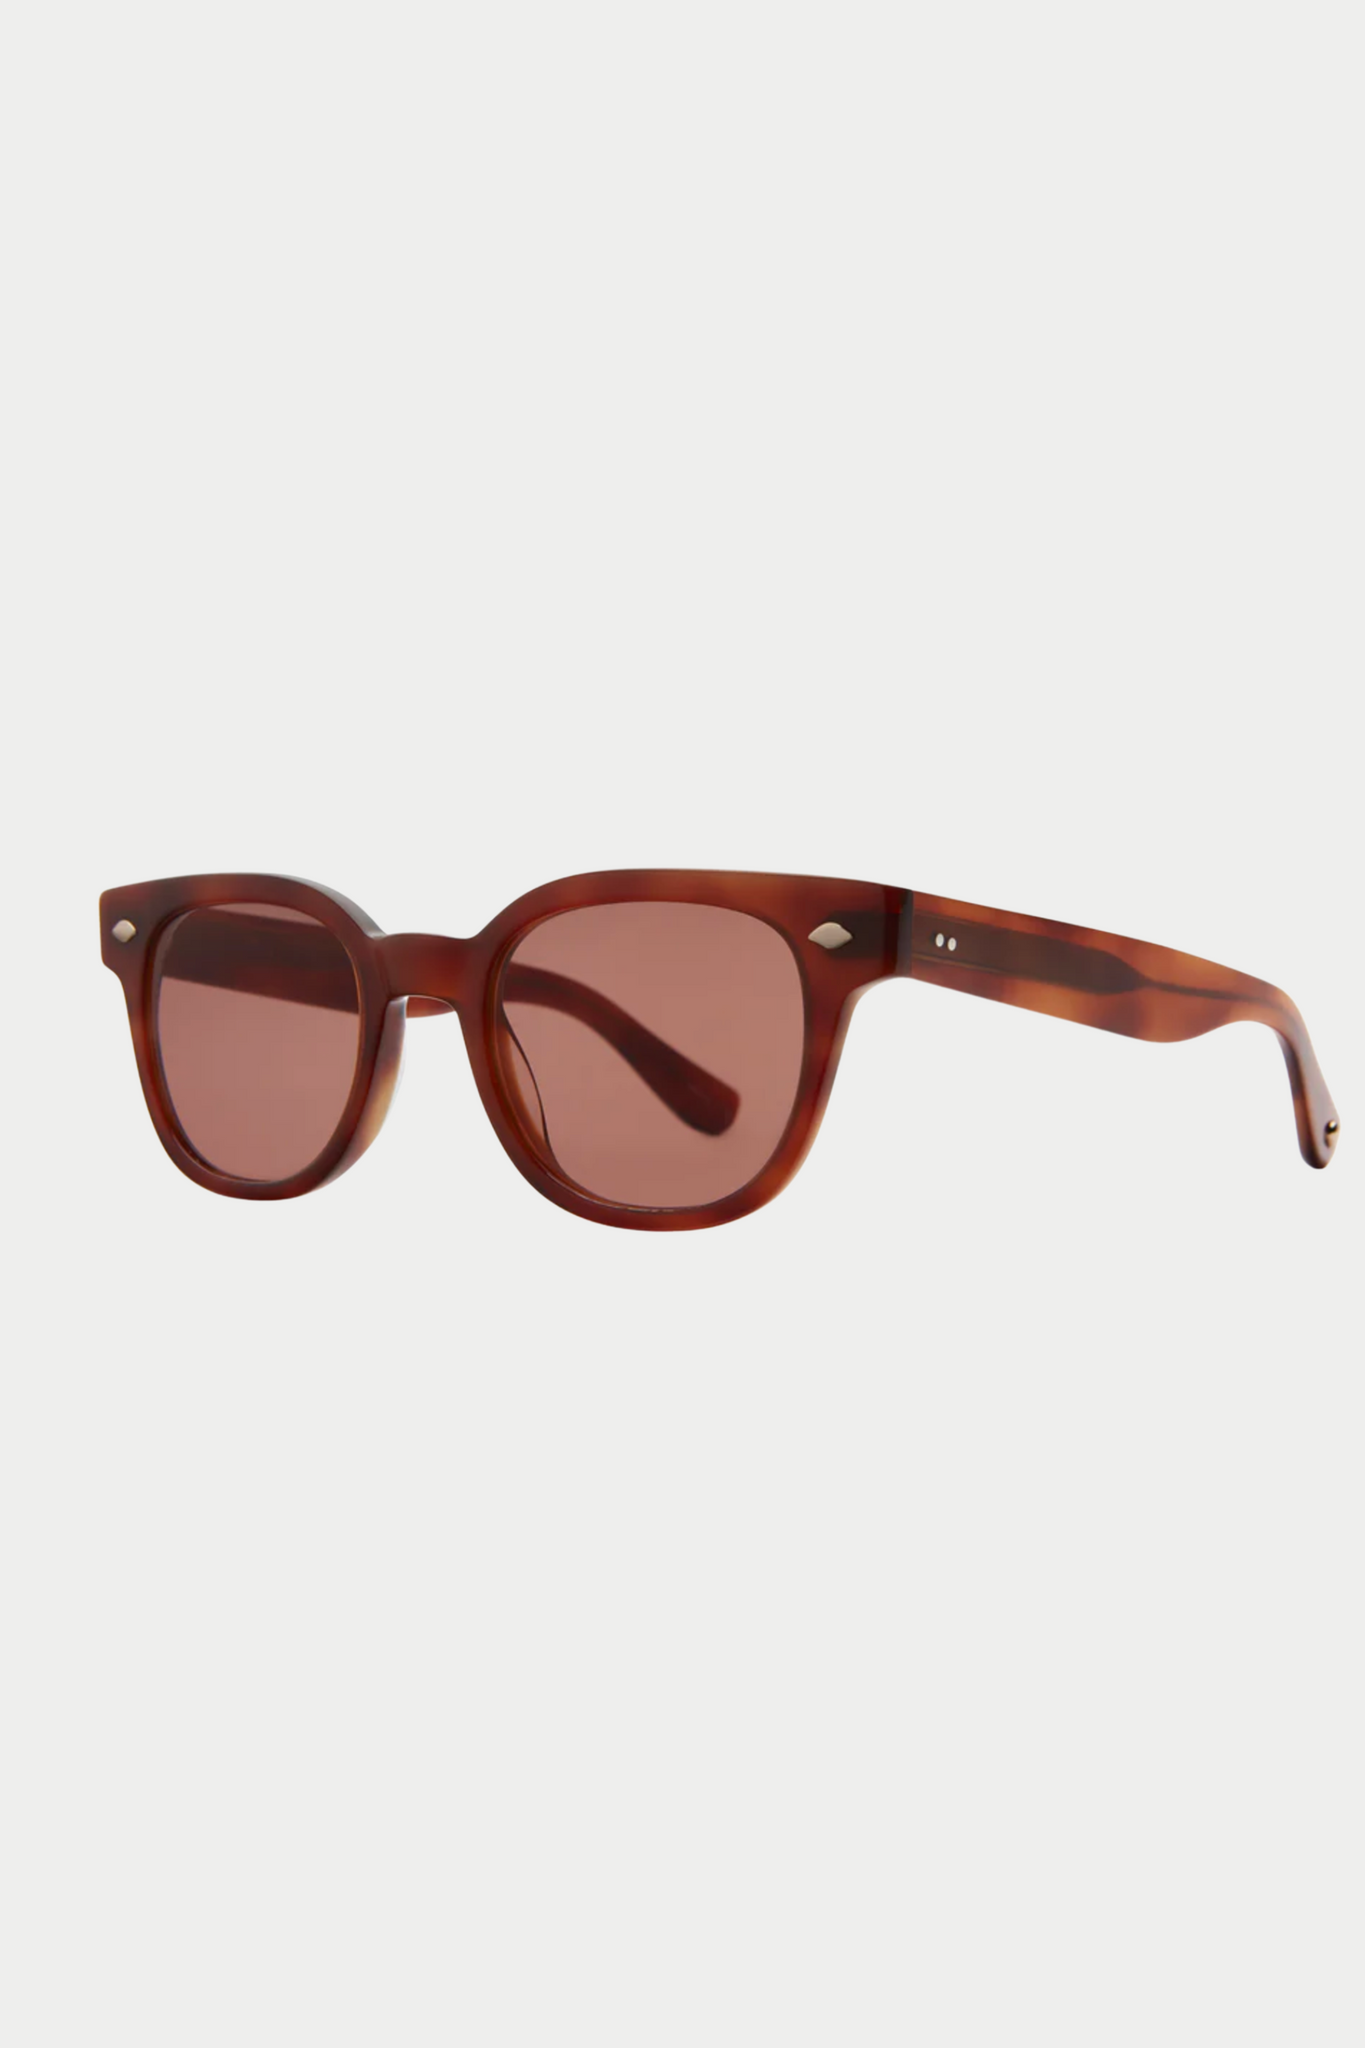 GARRETT LEIGHT - Canter Sunglasses, Vintage Burnt Tortoise